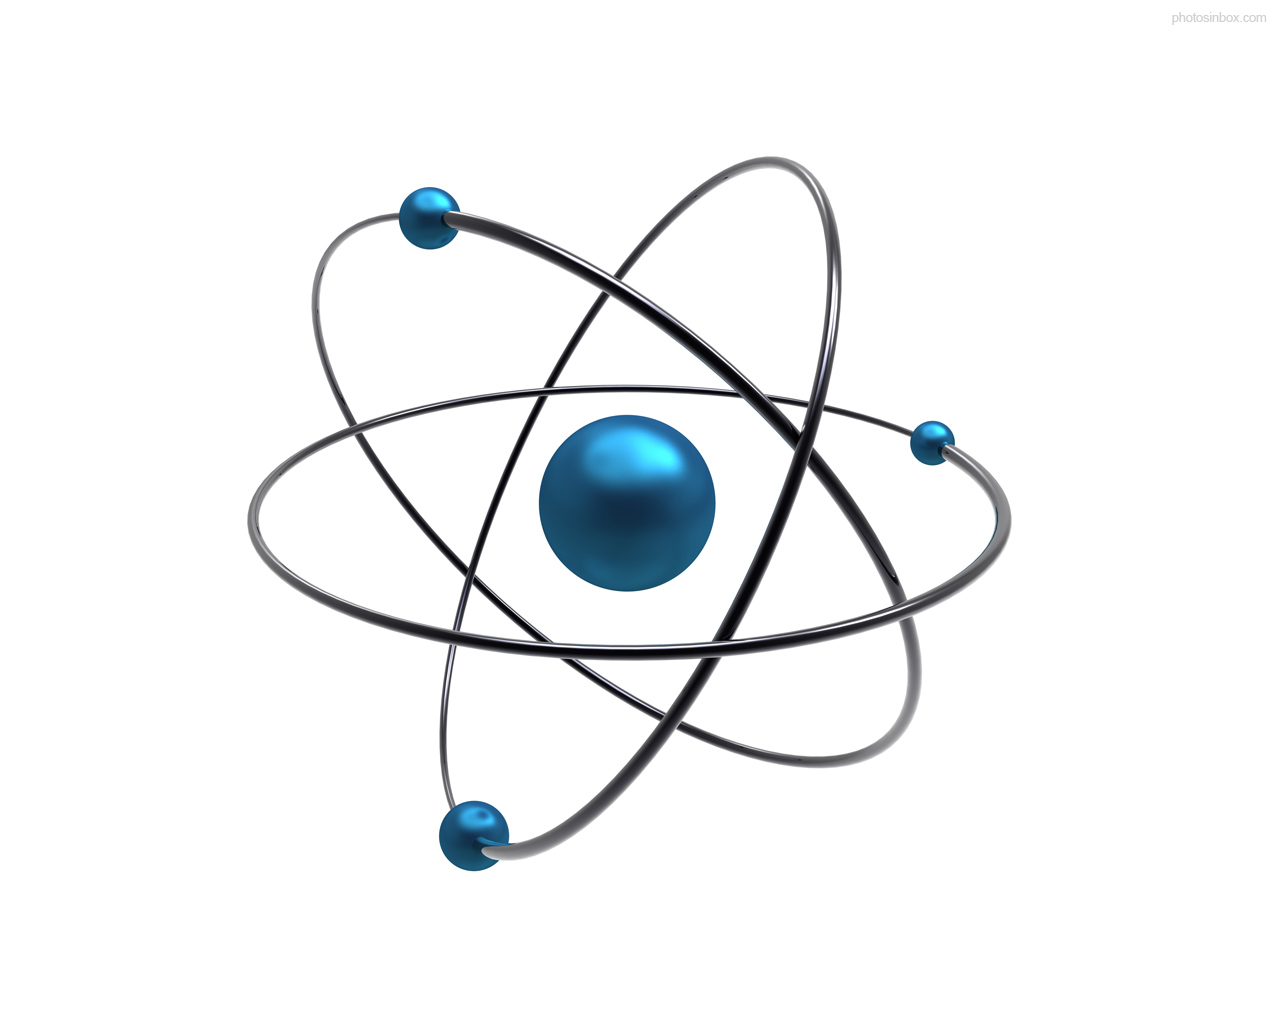 atom dan molekul - Kelas 9 - Kuis